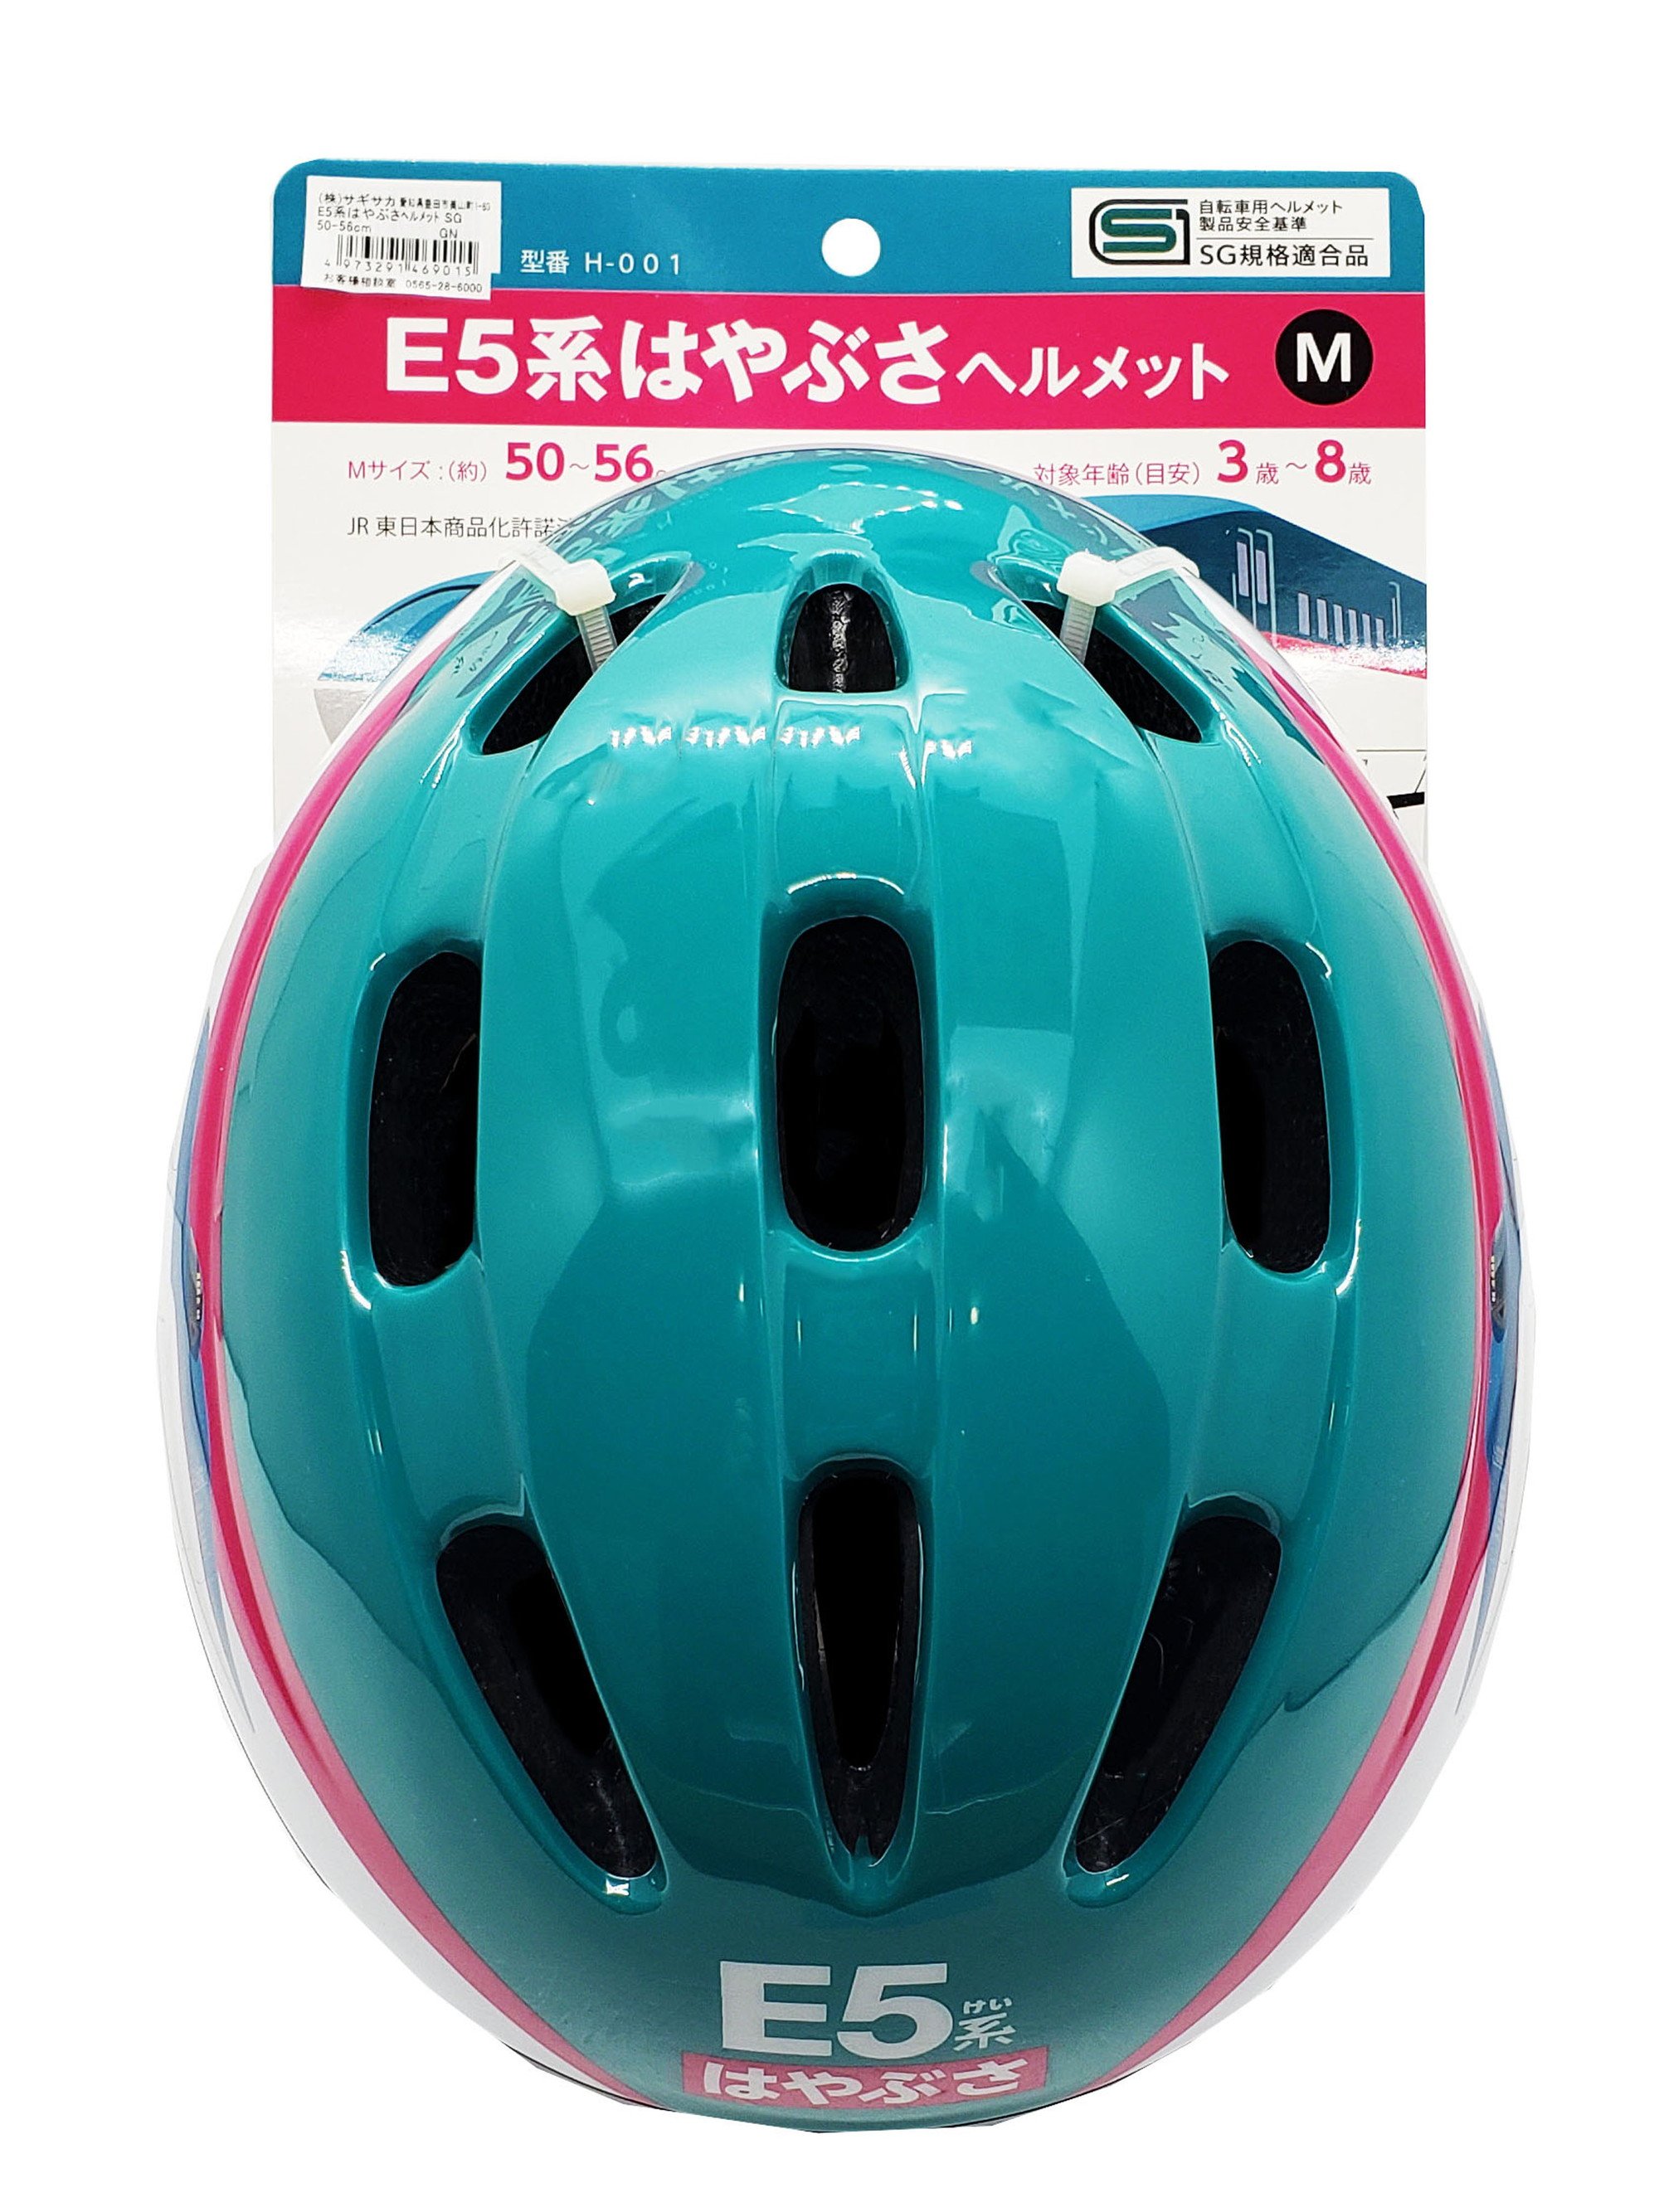 かわいい新作 キッズヘルメットS 新幹線E5系 はやぶさおもちゃ こども 子供 スポーツトイ 外遊び